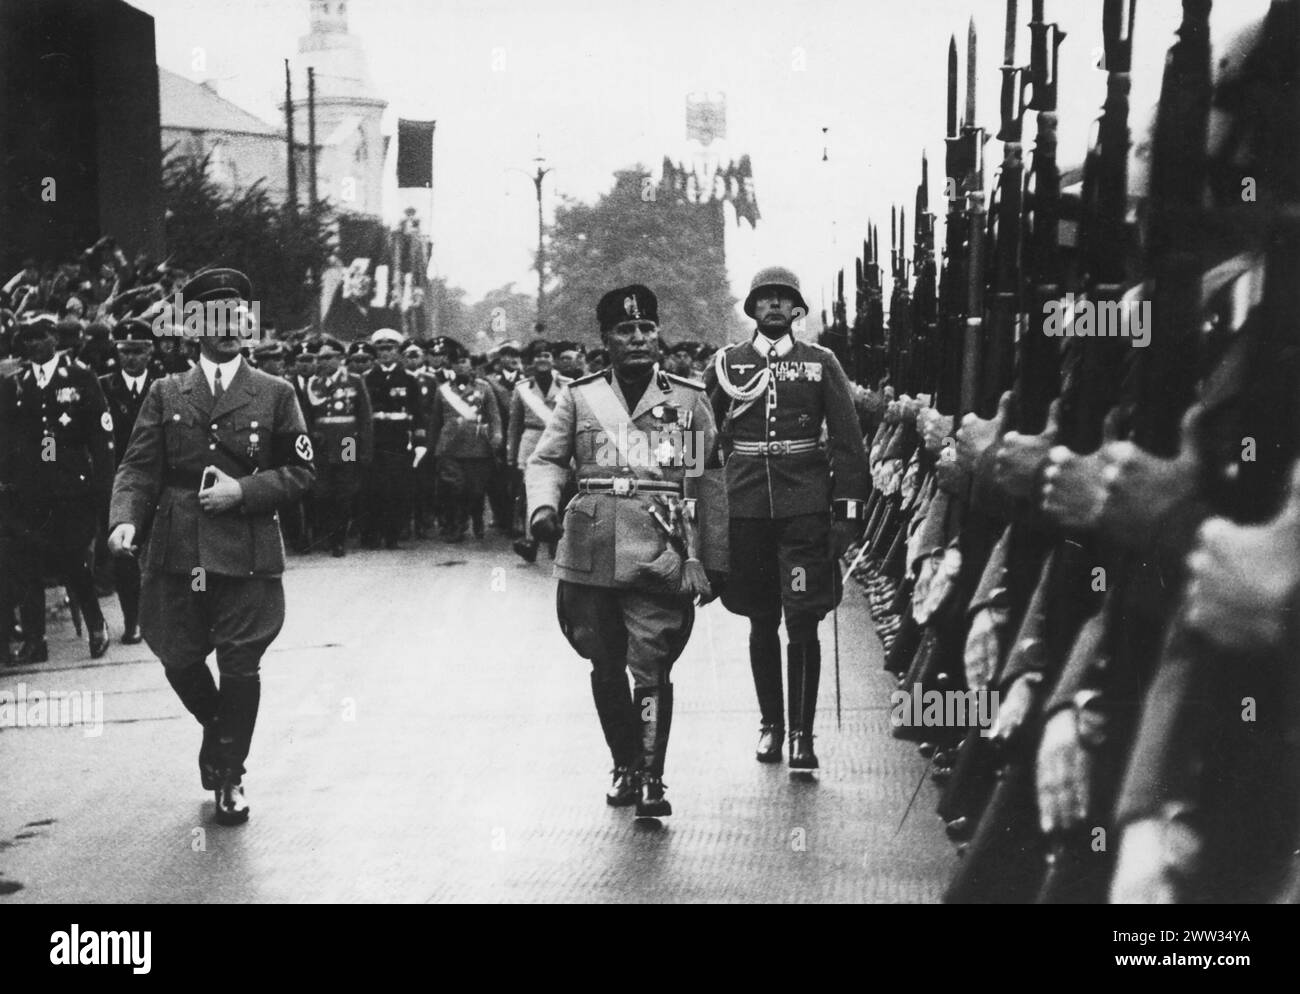 Benito Mussolini - homme politique et journaliste italien qui a fondé et dirigé le Parti national fasciste, inspectant les troupes aux côtés d'Adolf Hitler, dans les années 1940 Banque D'Images